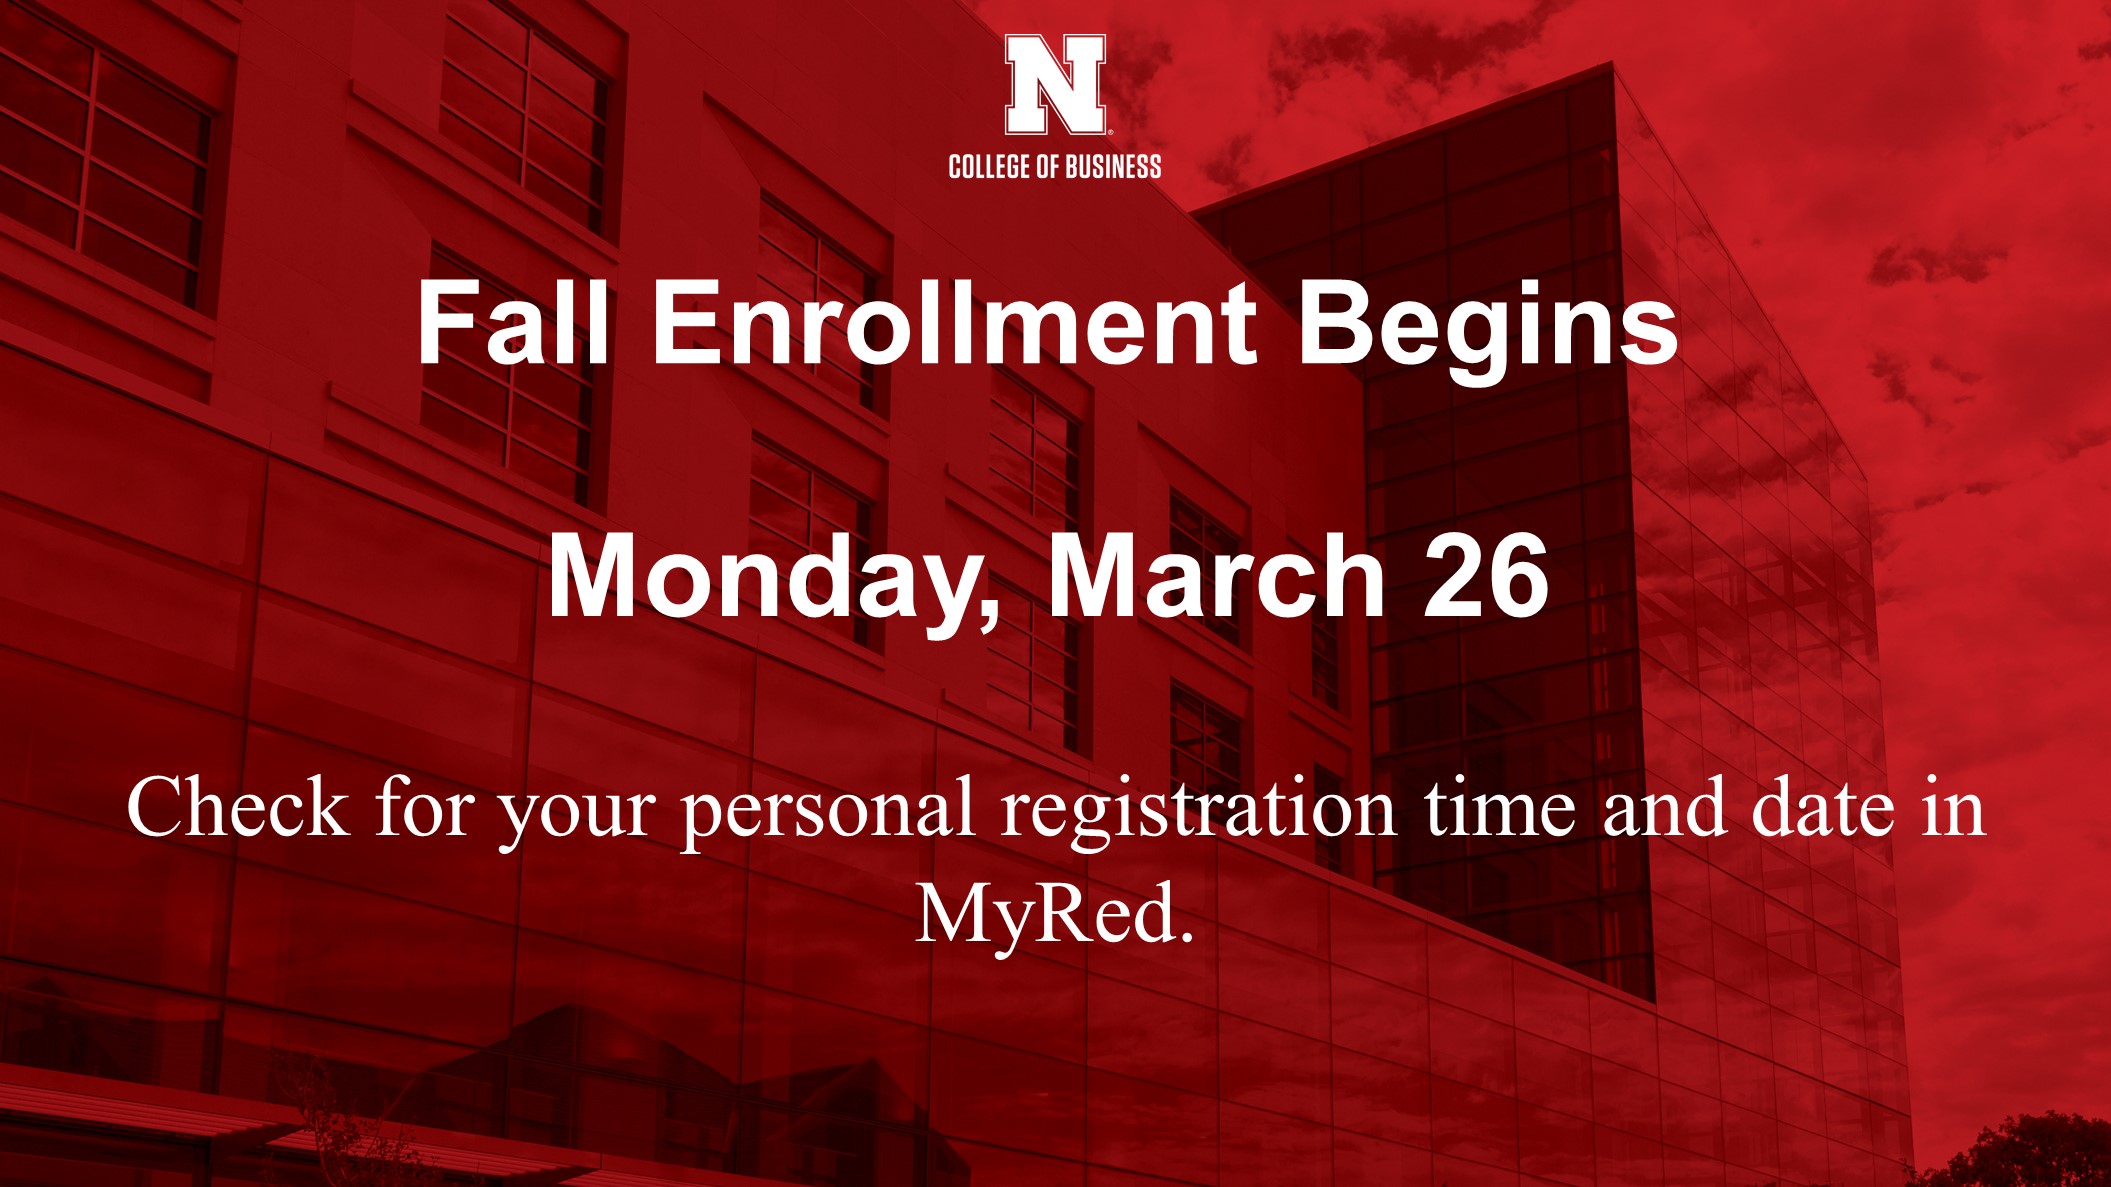 Fall Enrollment Begins Today Announce University of NebraskaLincoln